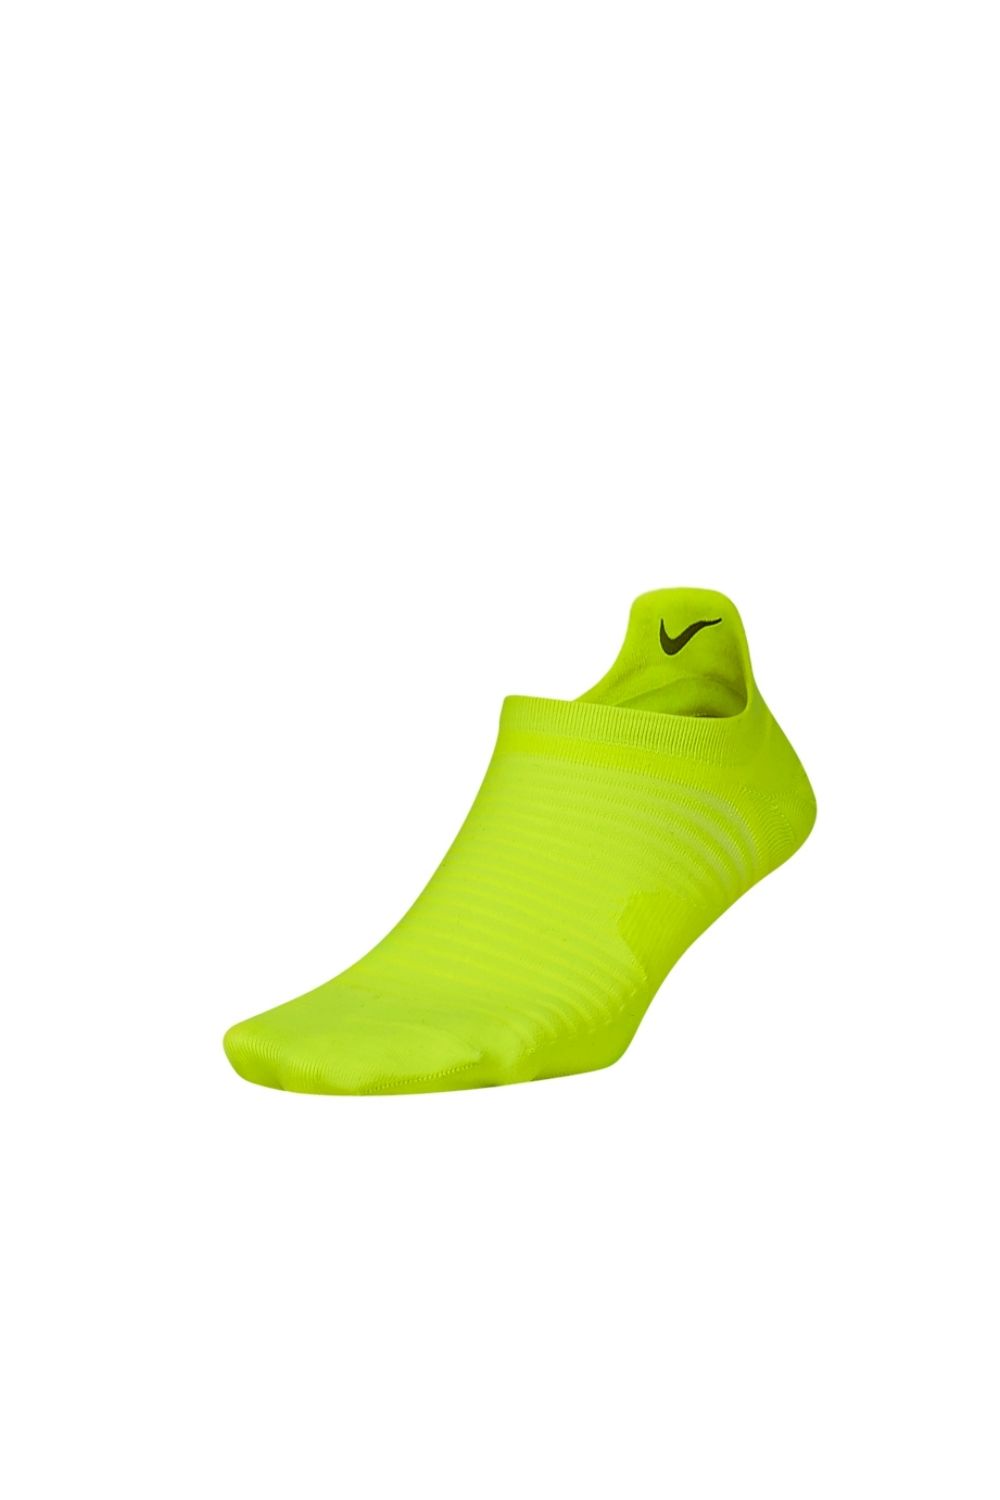 Γυναικεία/Αξεσουάρ/Κάλτσες NIKE - Unisex κάλτσες NIKE SPARK κίτρινες